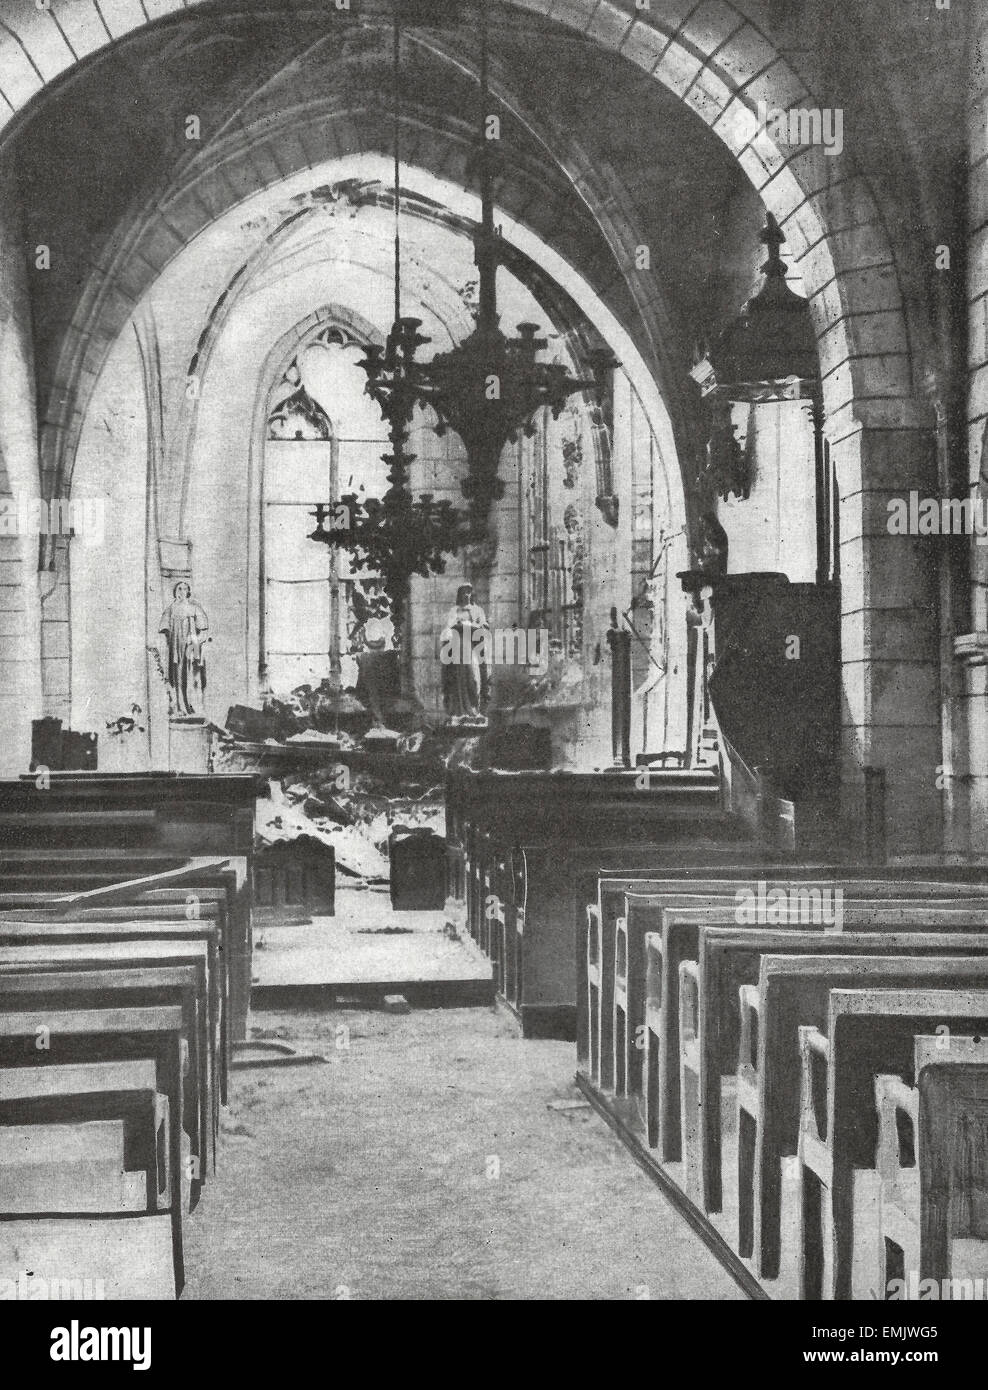 Uno de los milagros de la guerra - en el interior de una iglesia, mostrando cómo la estatua de la Virgen y un santo consiguió escapar de la destrucción aunque toneladas de escombros cayeron alrededor de ellos, de la I Guerra Mundial Foto de stock